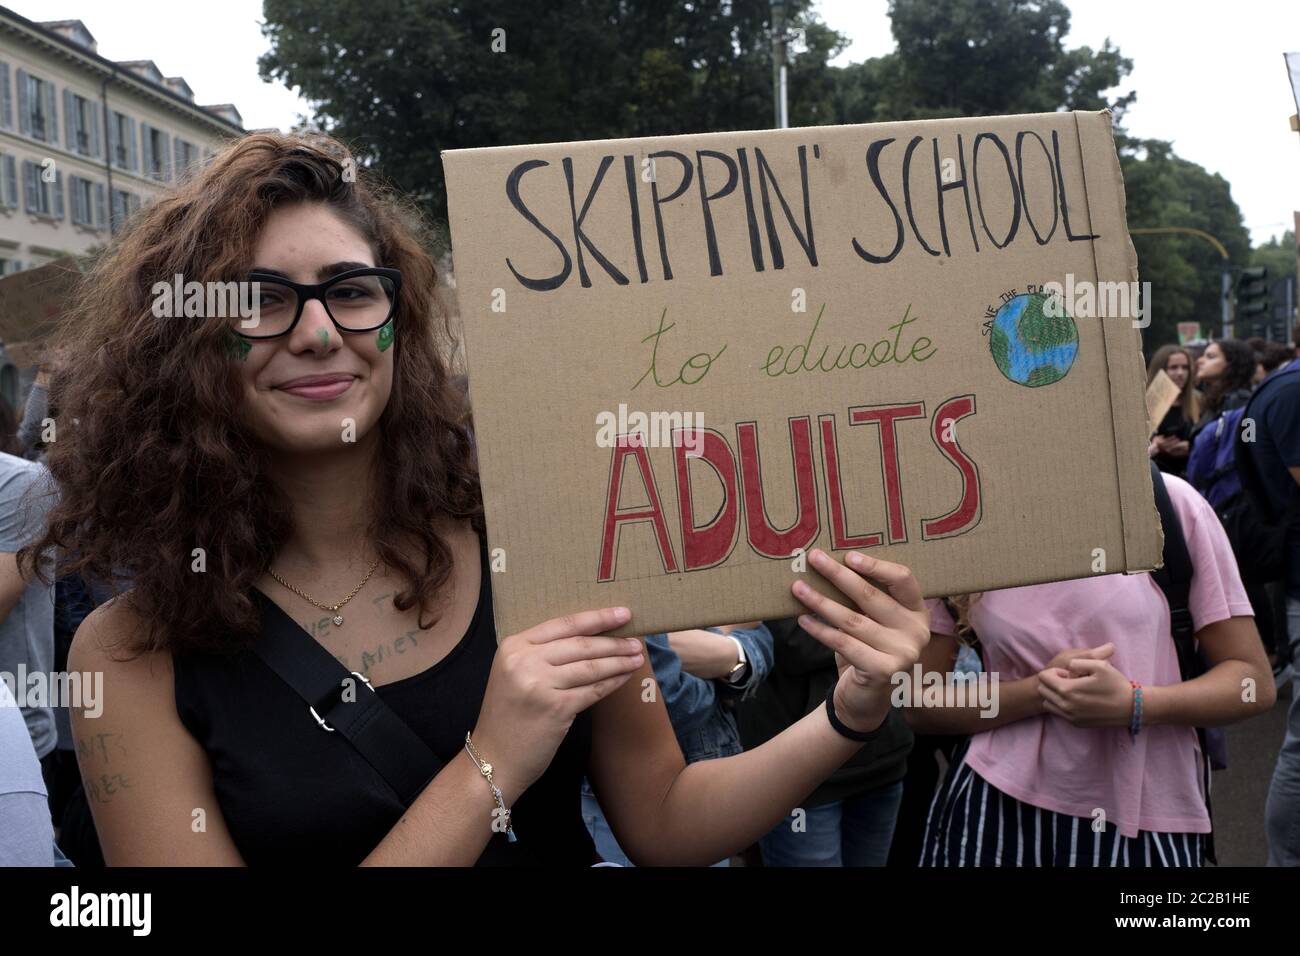 Grève des étudiants vendredi pour l'avenir, grève internationale contre le réchauffement climatique, à Milan, septembre 2019. Banque D'Images